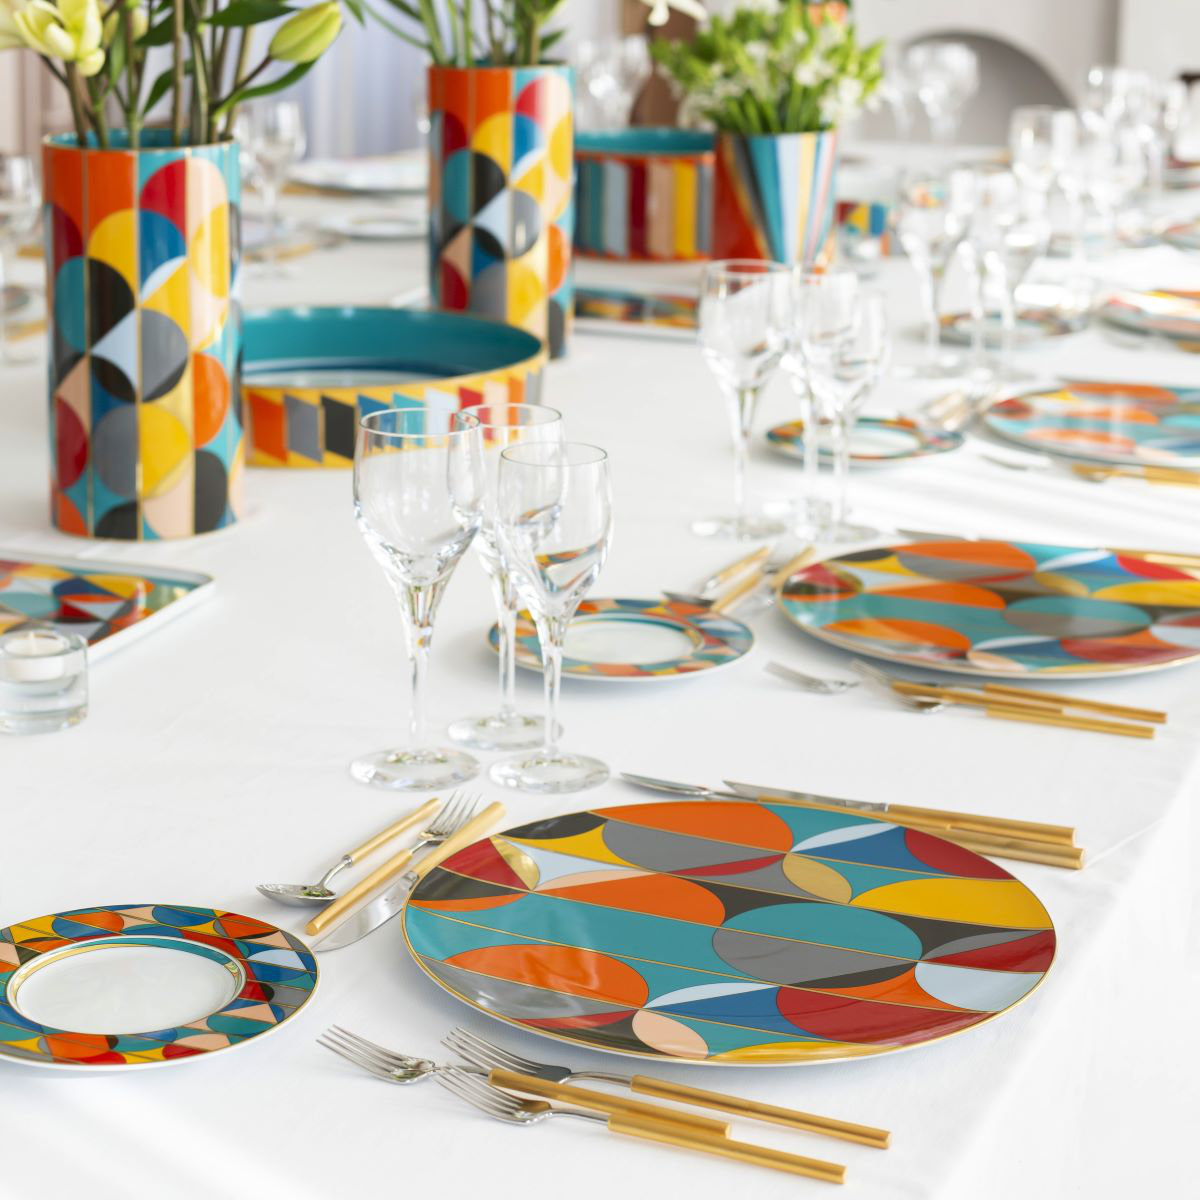 Colourful "Futurismo" tableware by Vista Alegre on a table